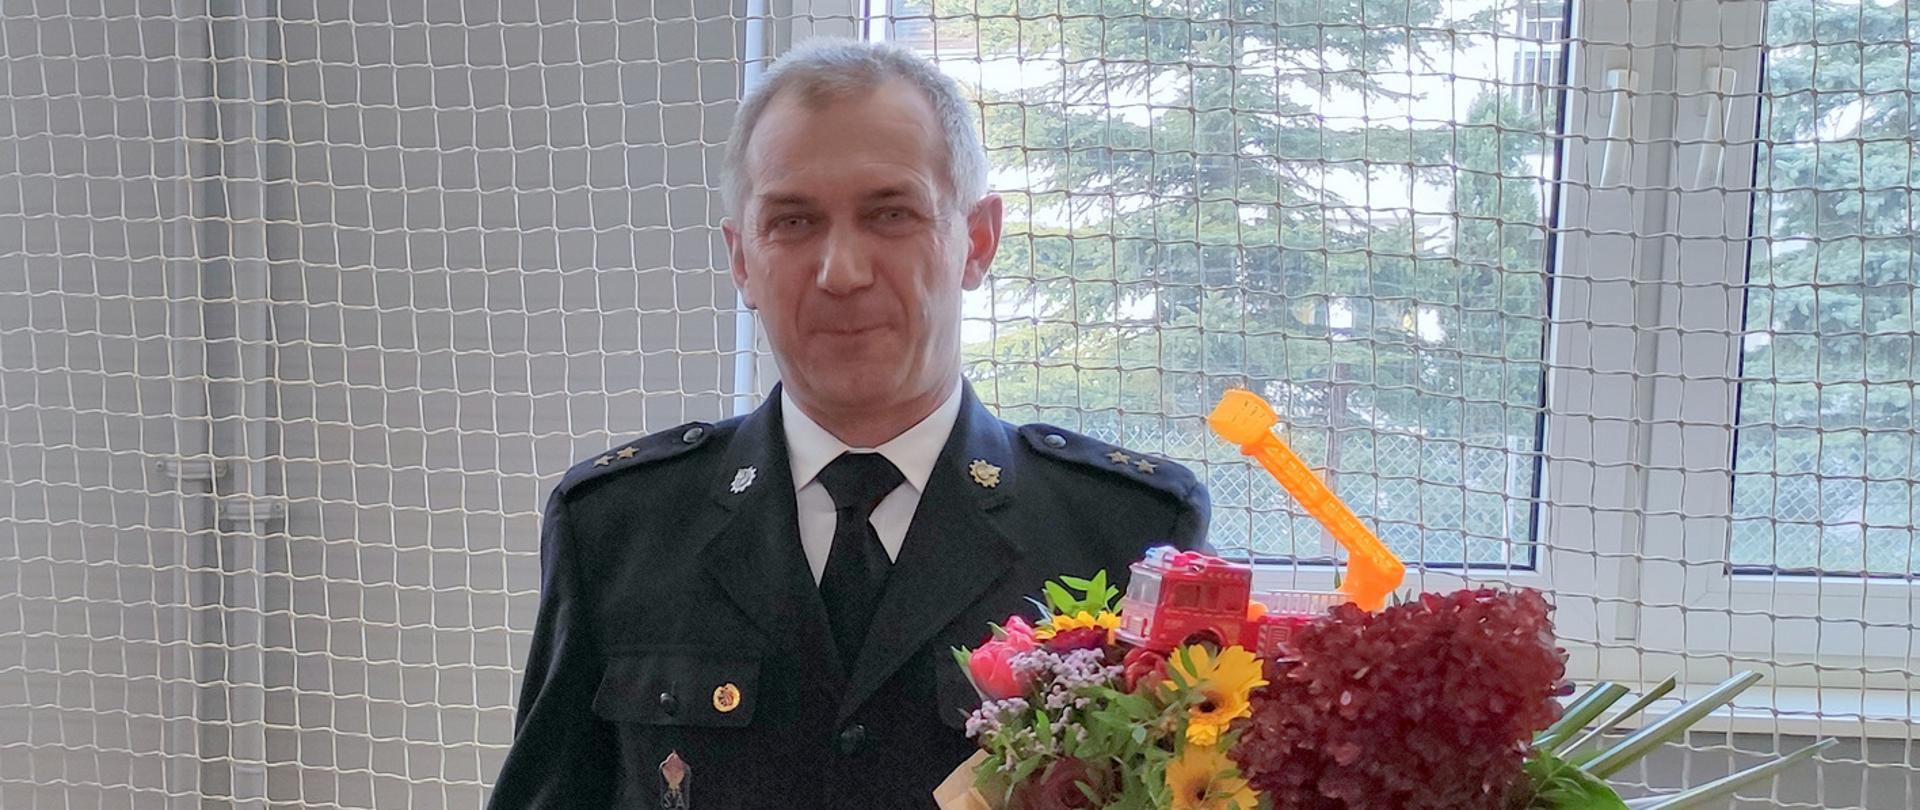 Oficer Państwowej Straży Pożarnej w mundurze wyjściowym z kwiatami i złotym toporkiem z okazji przejścia na emeryturę.